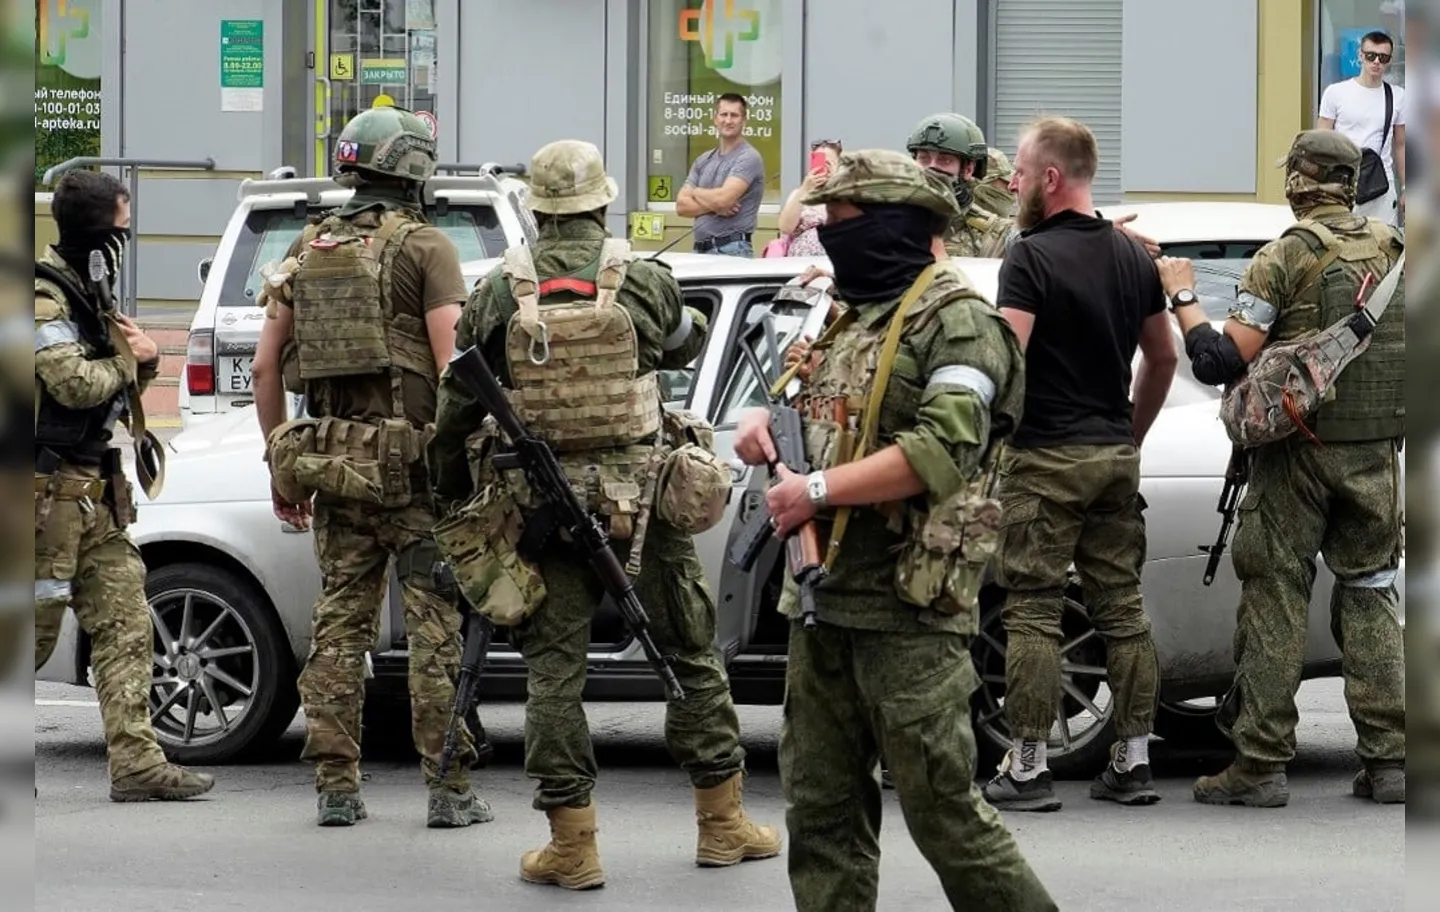 Segundo secretário, forças paramilitares estavam prontas “para treinar exército belarusso e se estabelecer”